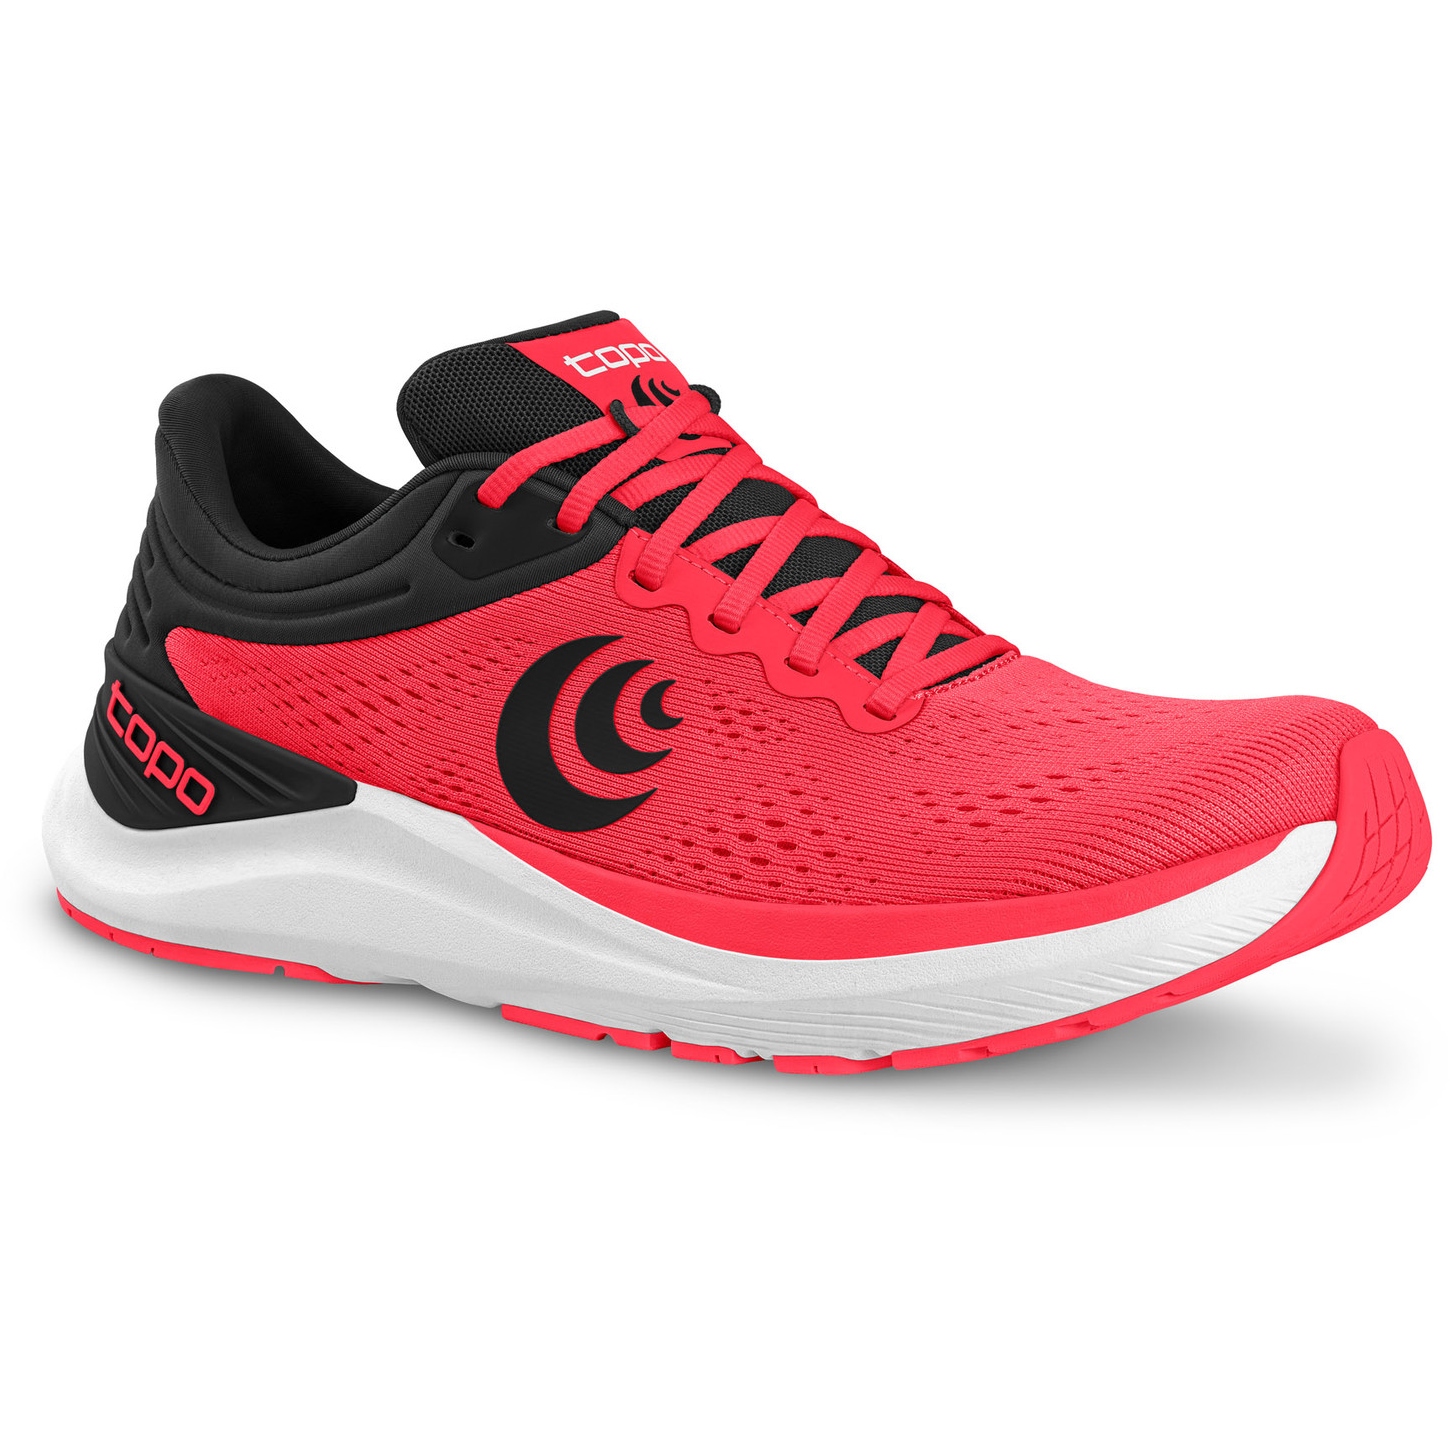 Produktbild von Topo Athletic Ultrafly 4 Laufschuhe Herren - bright red/black